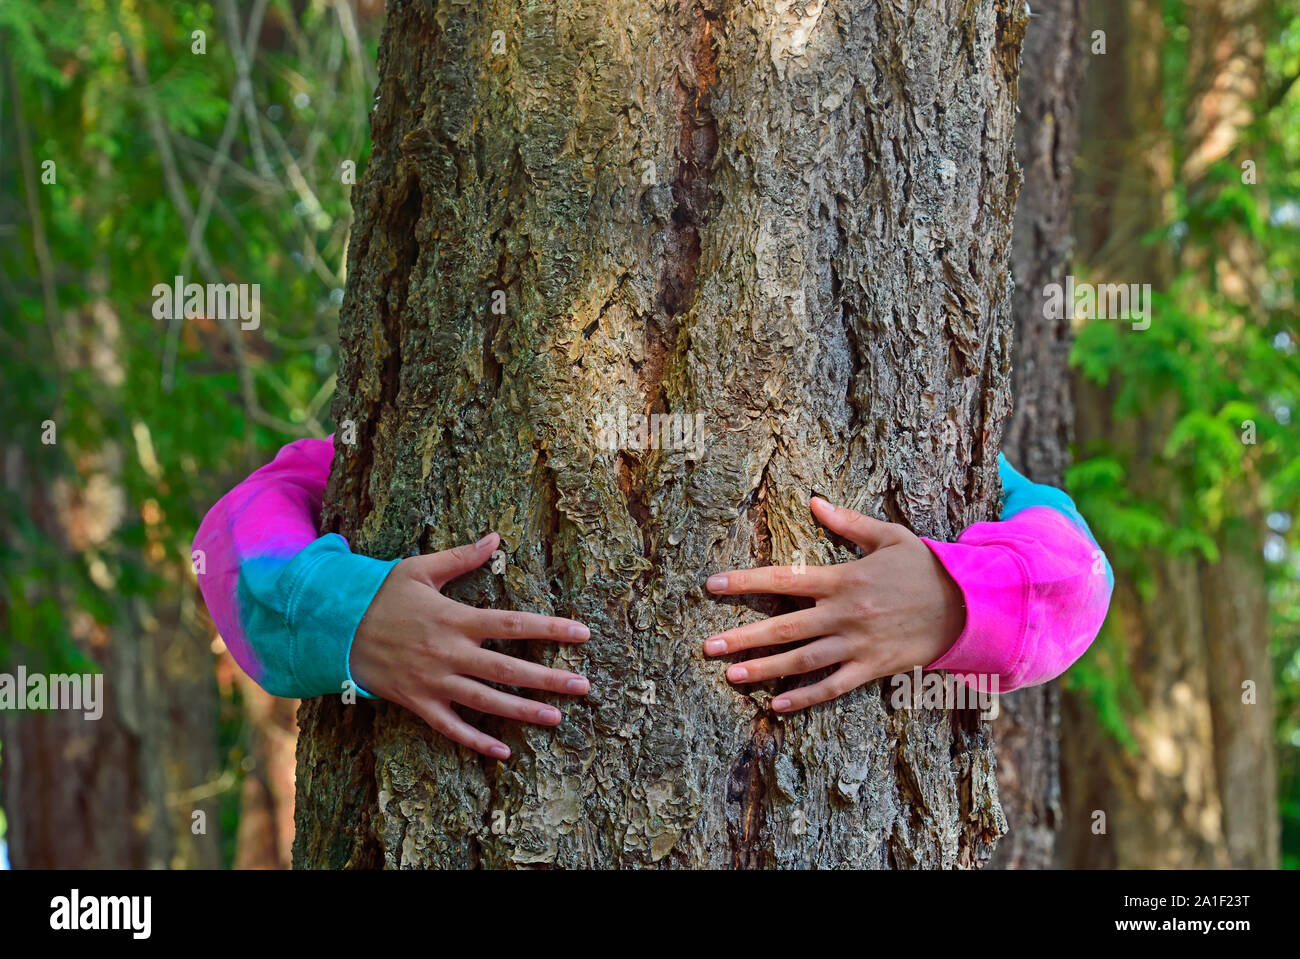 Eine Person in bunte Kleidung mit ihren Armen umschlingt Rund um den Stamm ein großer Baum wächst wild auf Vancouver Island British Columbia Kanada. Stockfoto